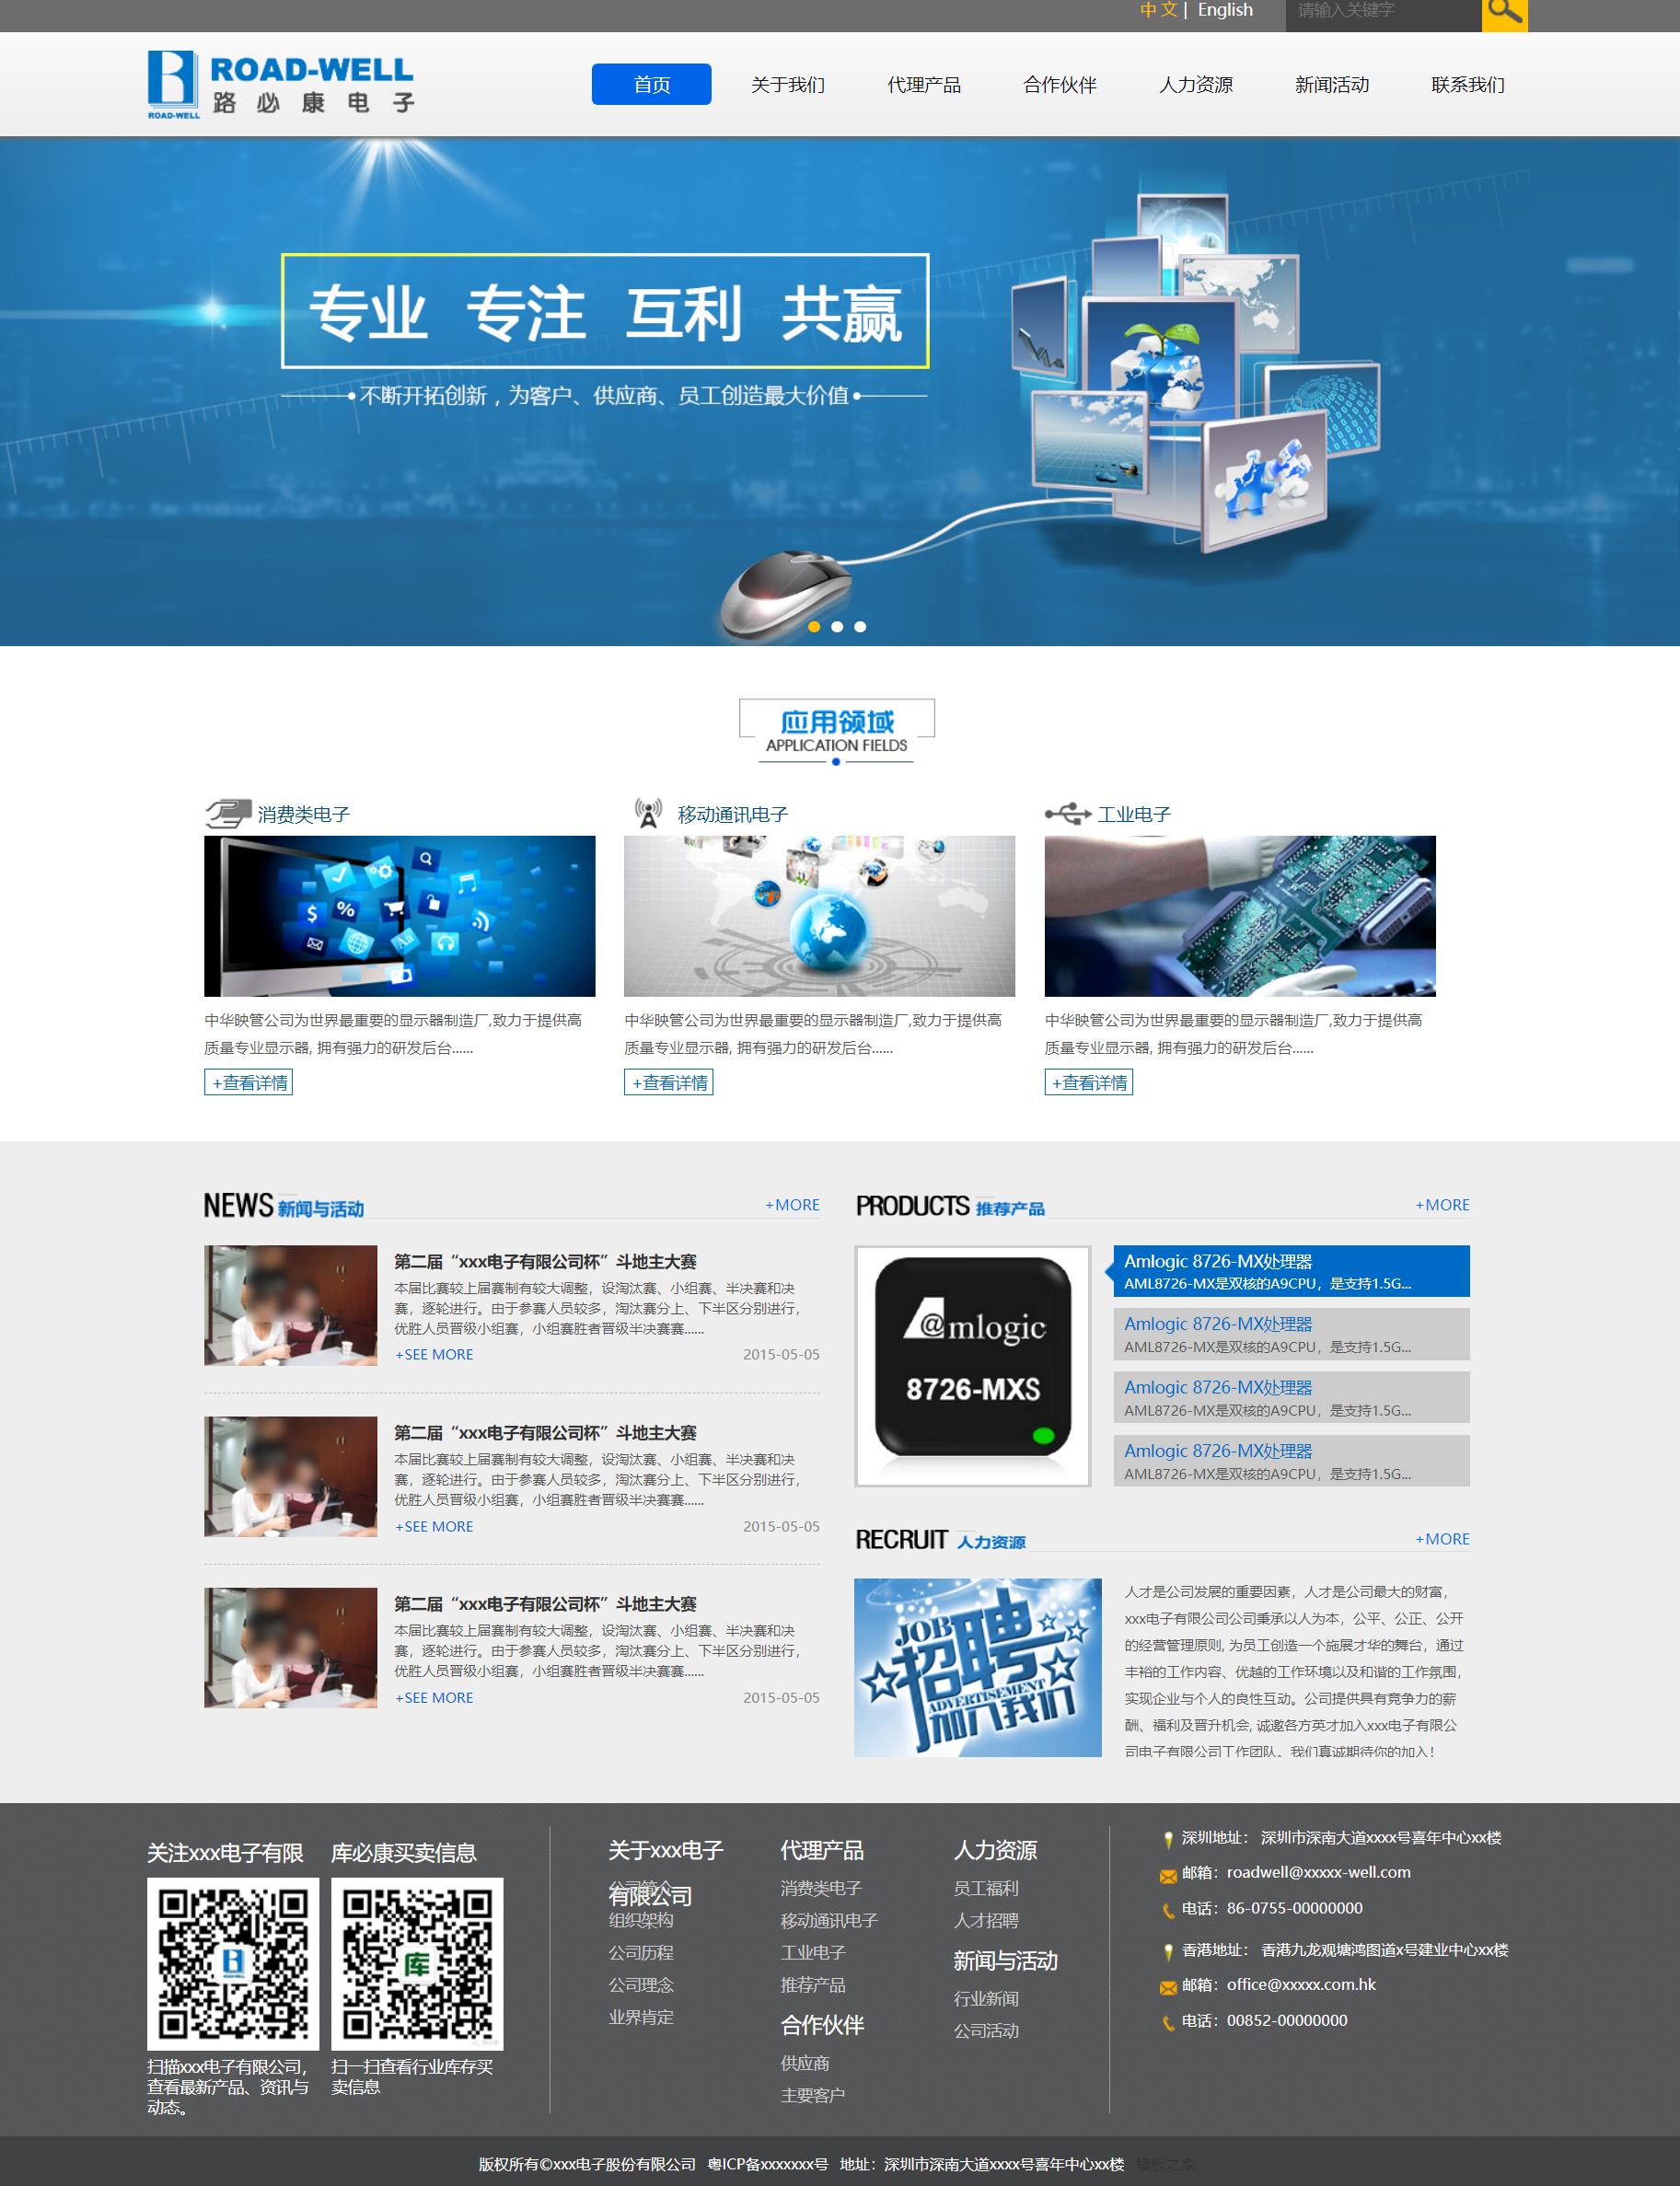 HTML5蓝色宽屏样式电子产品公司企业网站模板代码下载